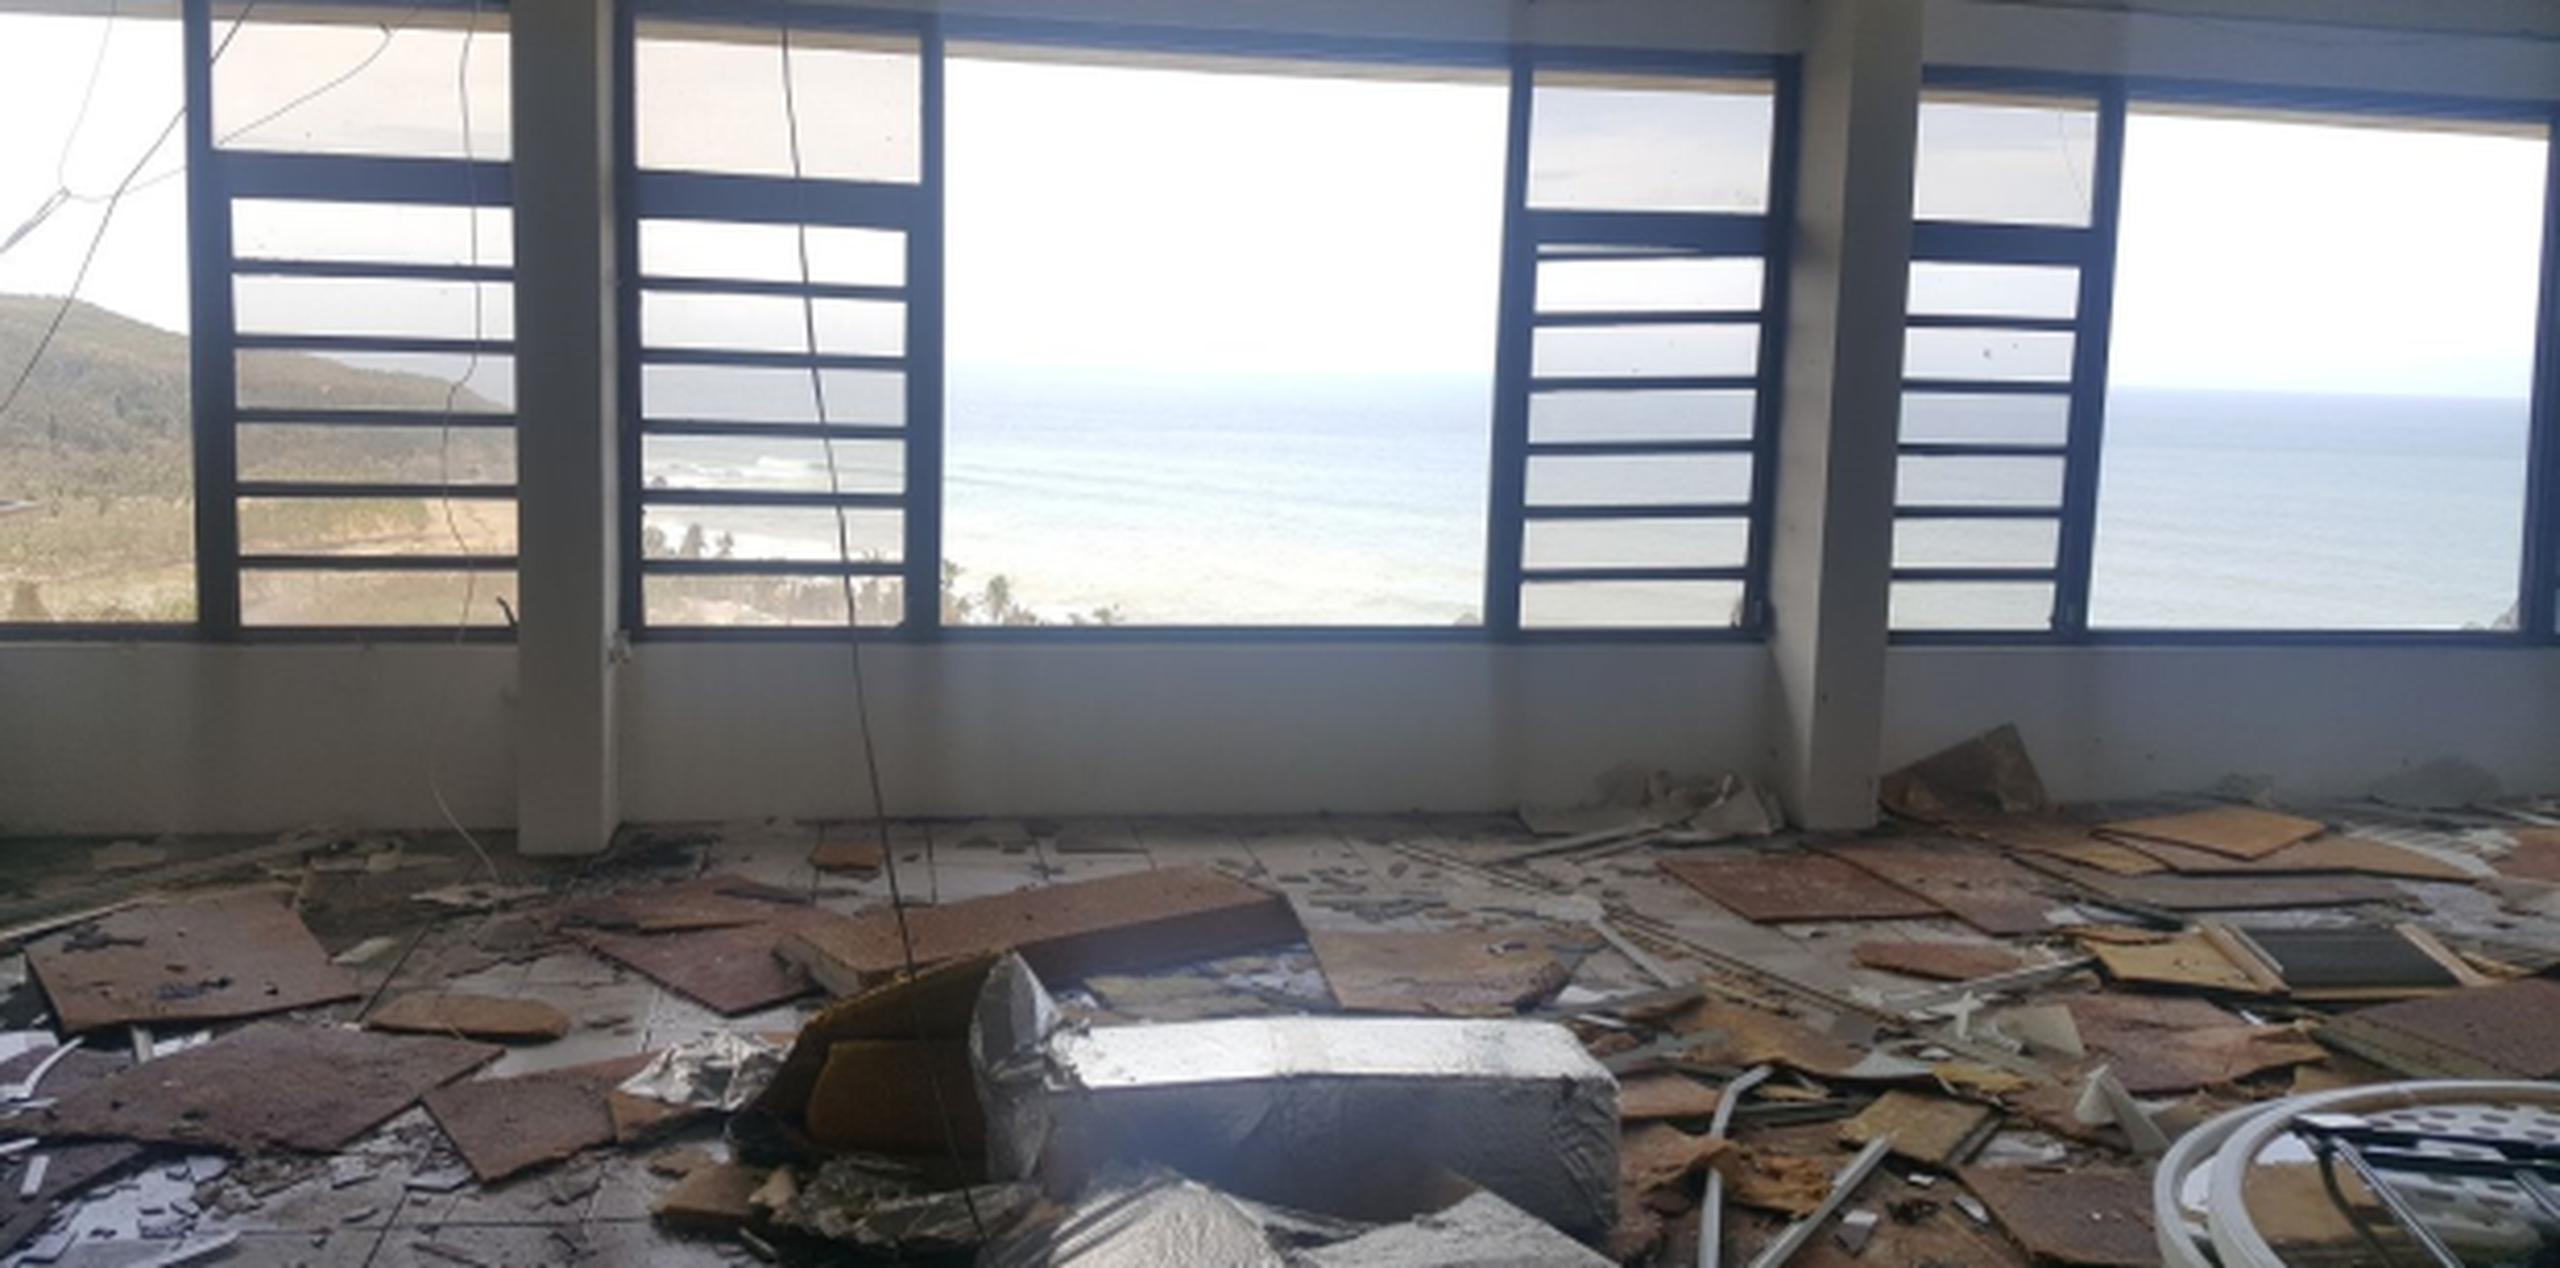 Ante el paso del huracán María hace más de una semana, el hotel sufrió daños mayores en la planta física, incluyendo la mayoría de las 50 habitaciones. (carlos.rosa@gfrmedia.com)